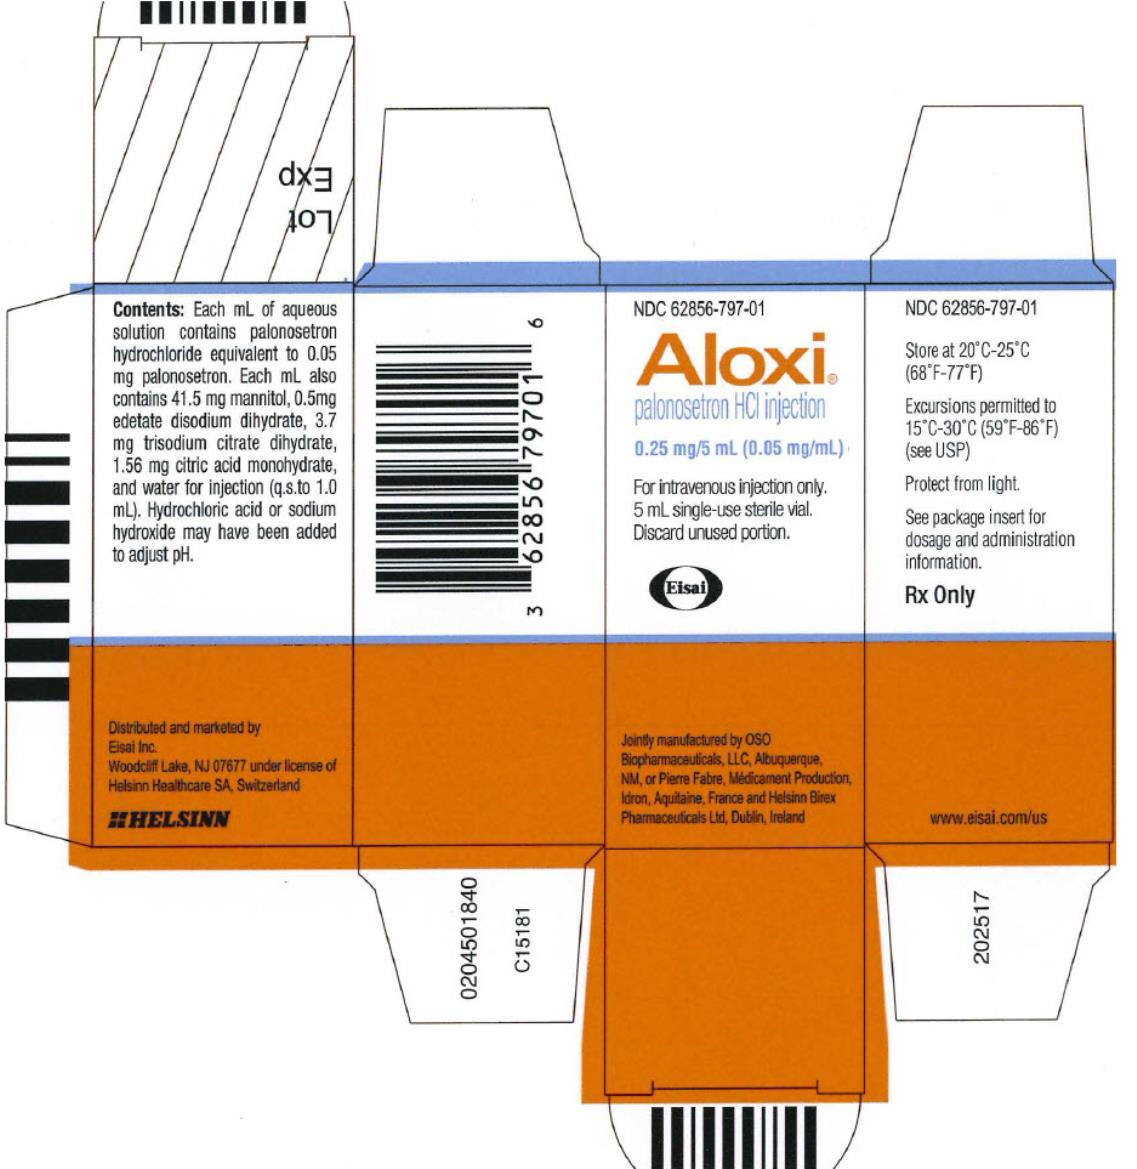 PRINCIPAL DISPLAY PANEL
NDC 62856-797-01
Aloxi
0.25 mg/ 5 mL (0.05 mg/ mL)
Rx Only
